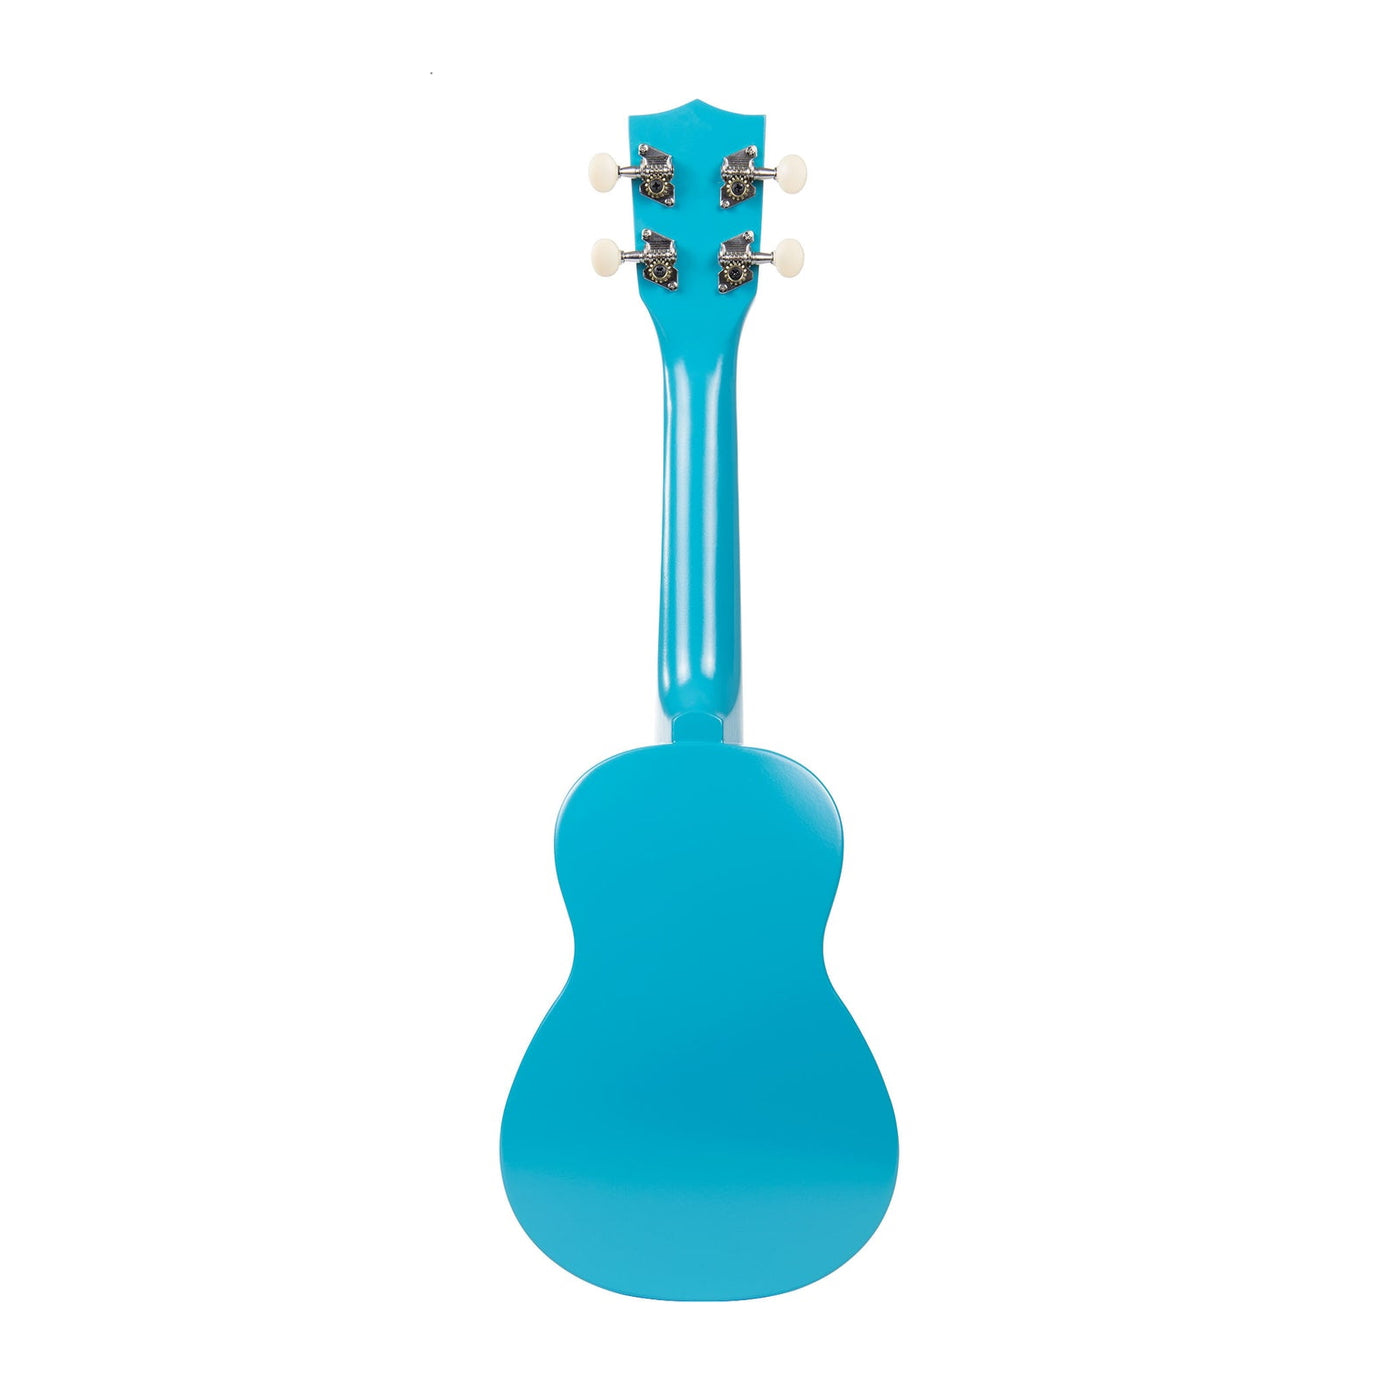 Makala ukulele, blå med haj